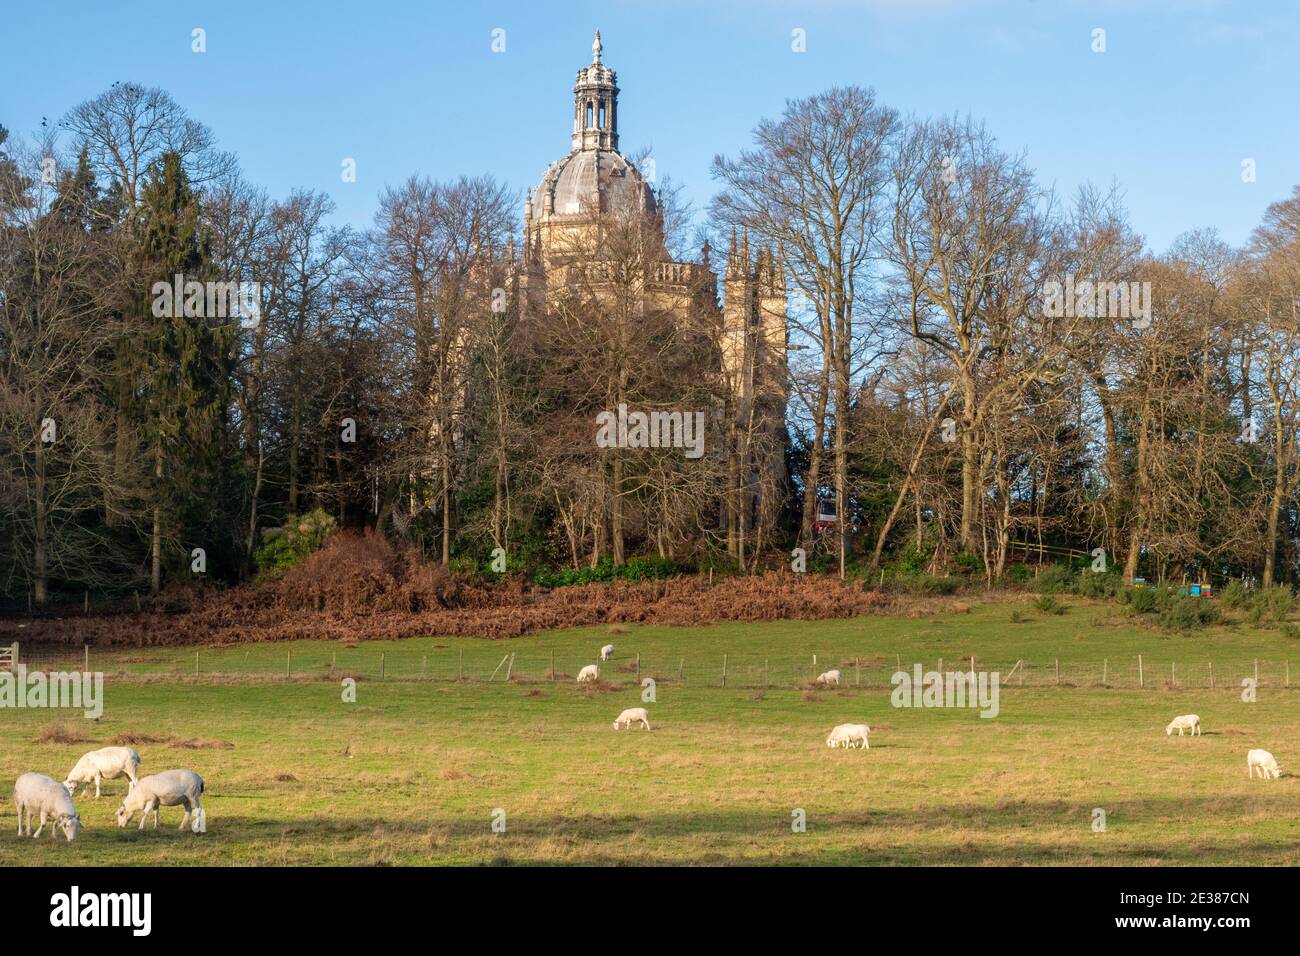 La chiesa di St. Michael's Abbey, un monastero benedettino a Farnborough, Hampshire, Regno Unito, con il pascolo delle pecore in un campo in primo piano Foto Stock